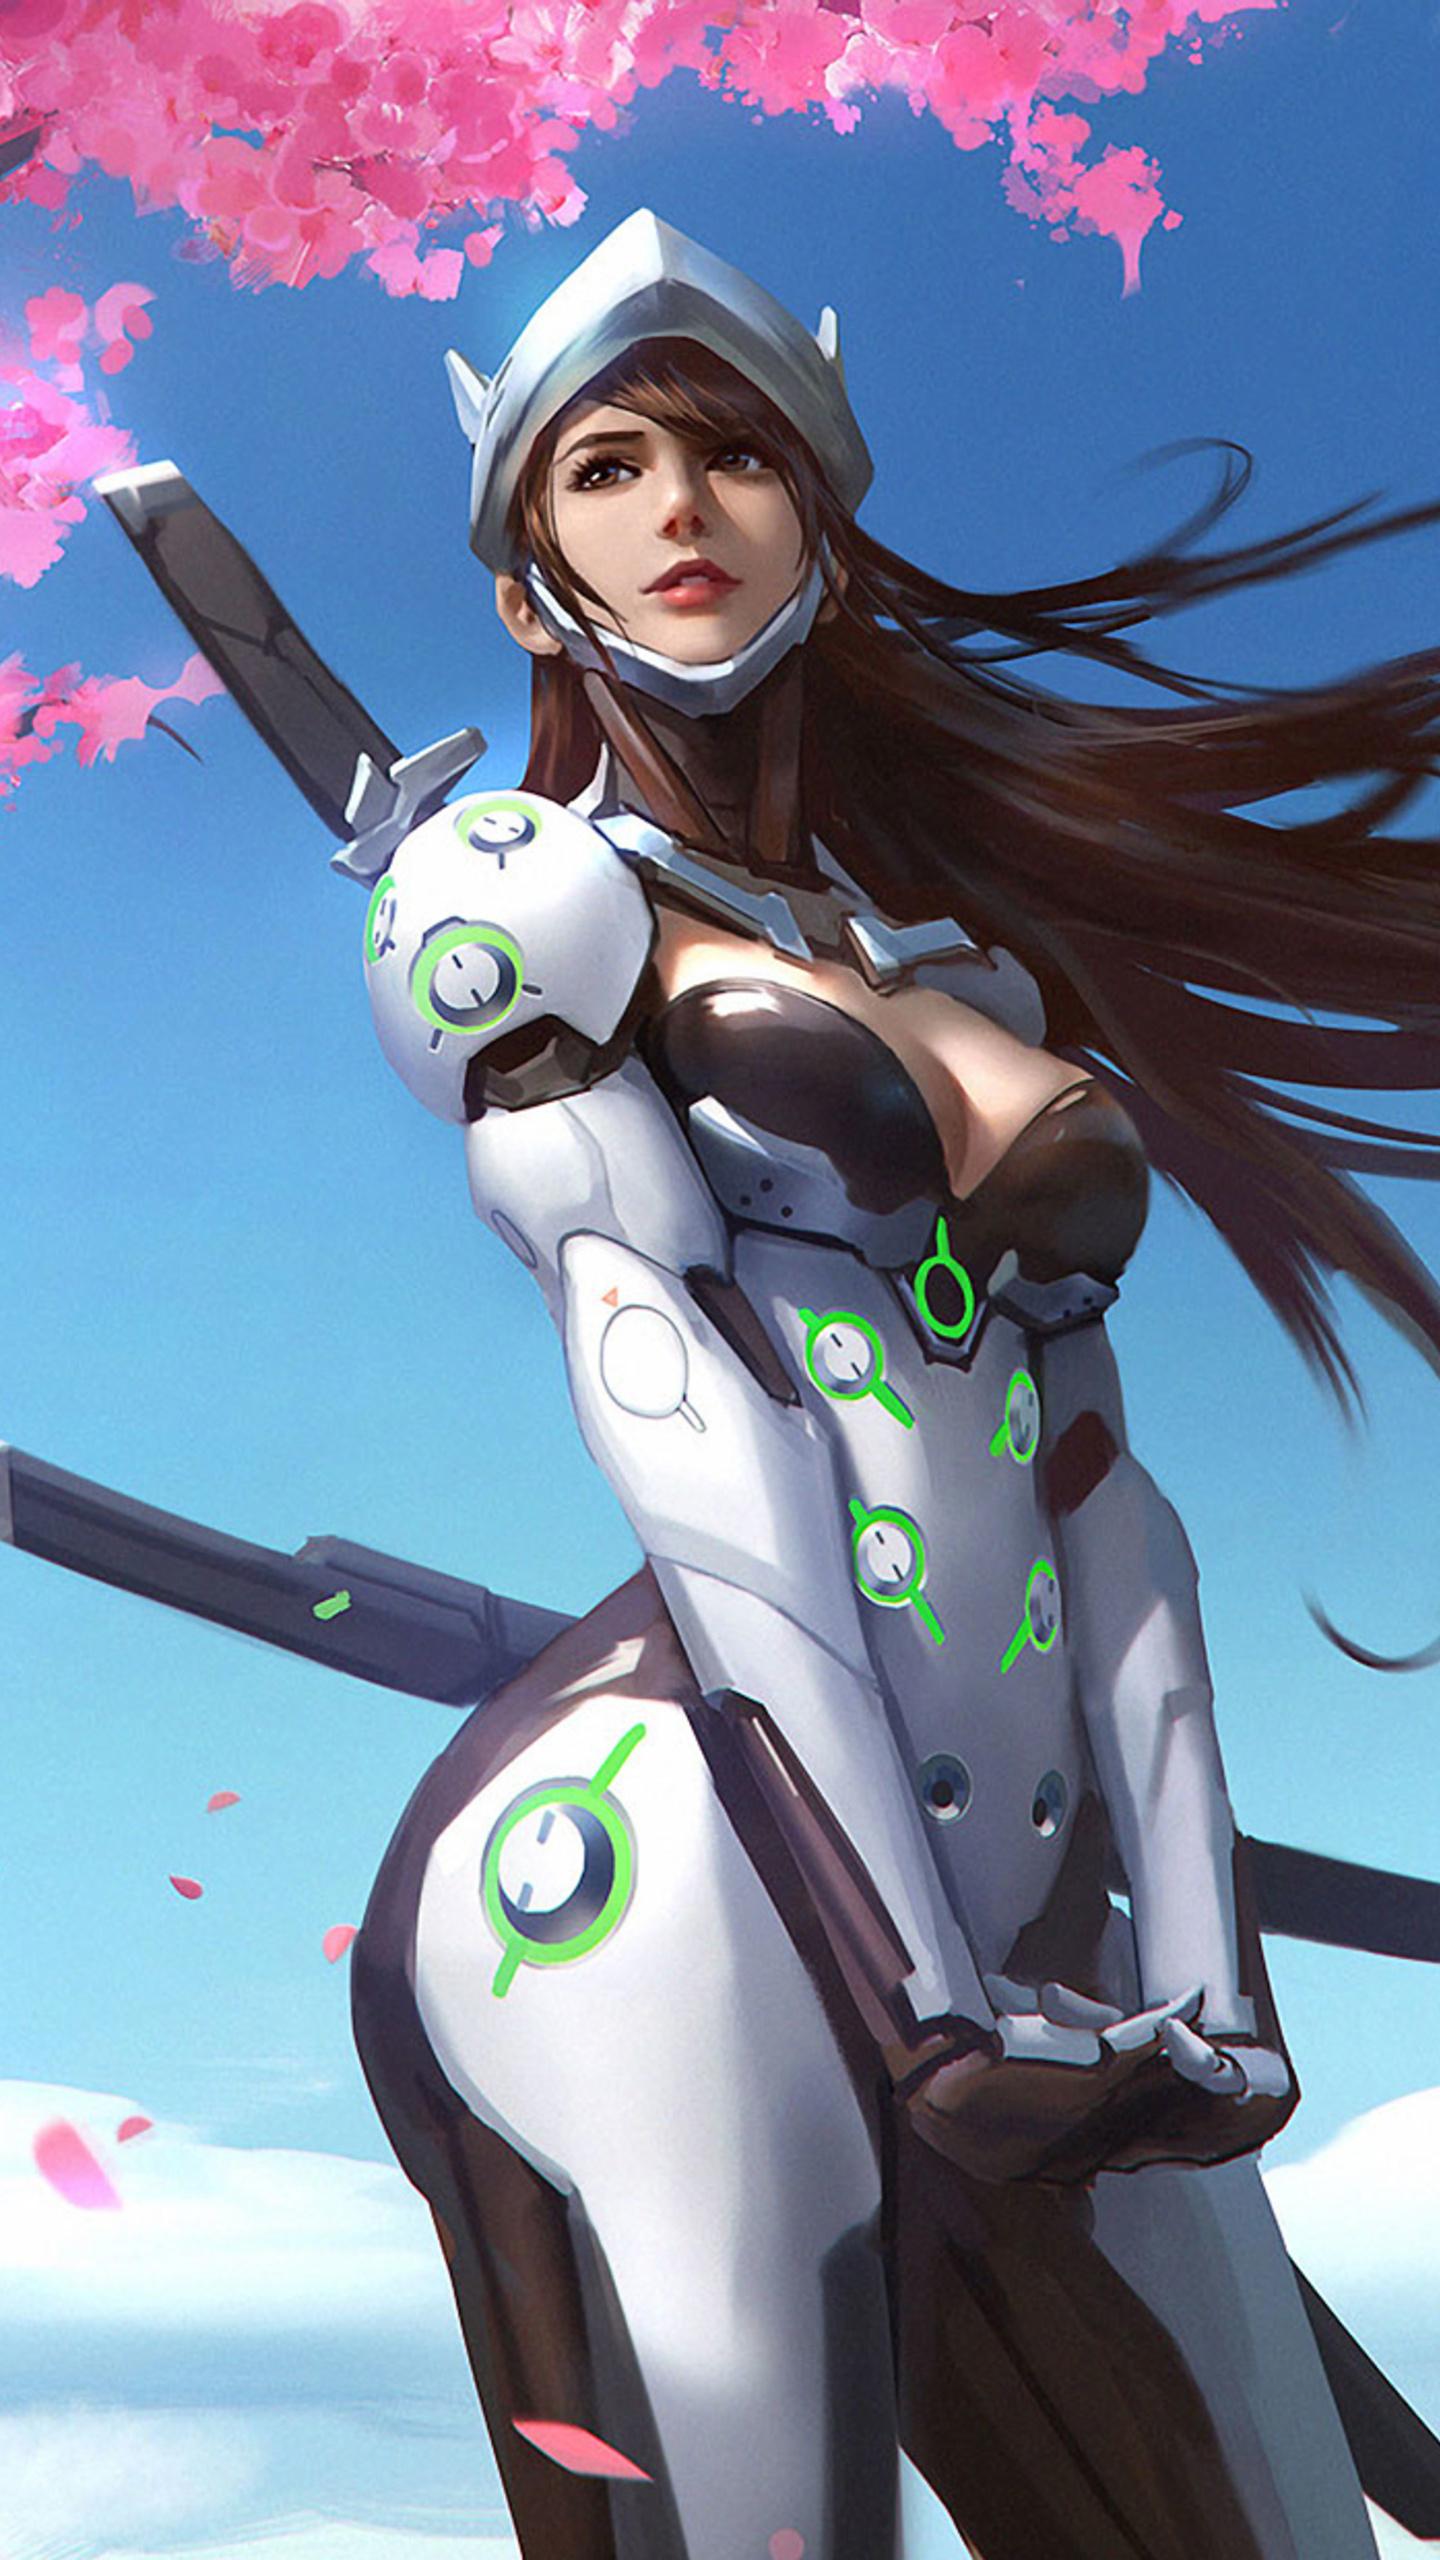 Genji Overwatch Girl In 1440x2560 Resolution. genji-overwatch-girl-v9.jpg. 